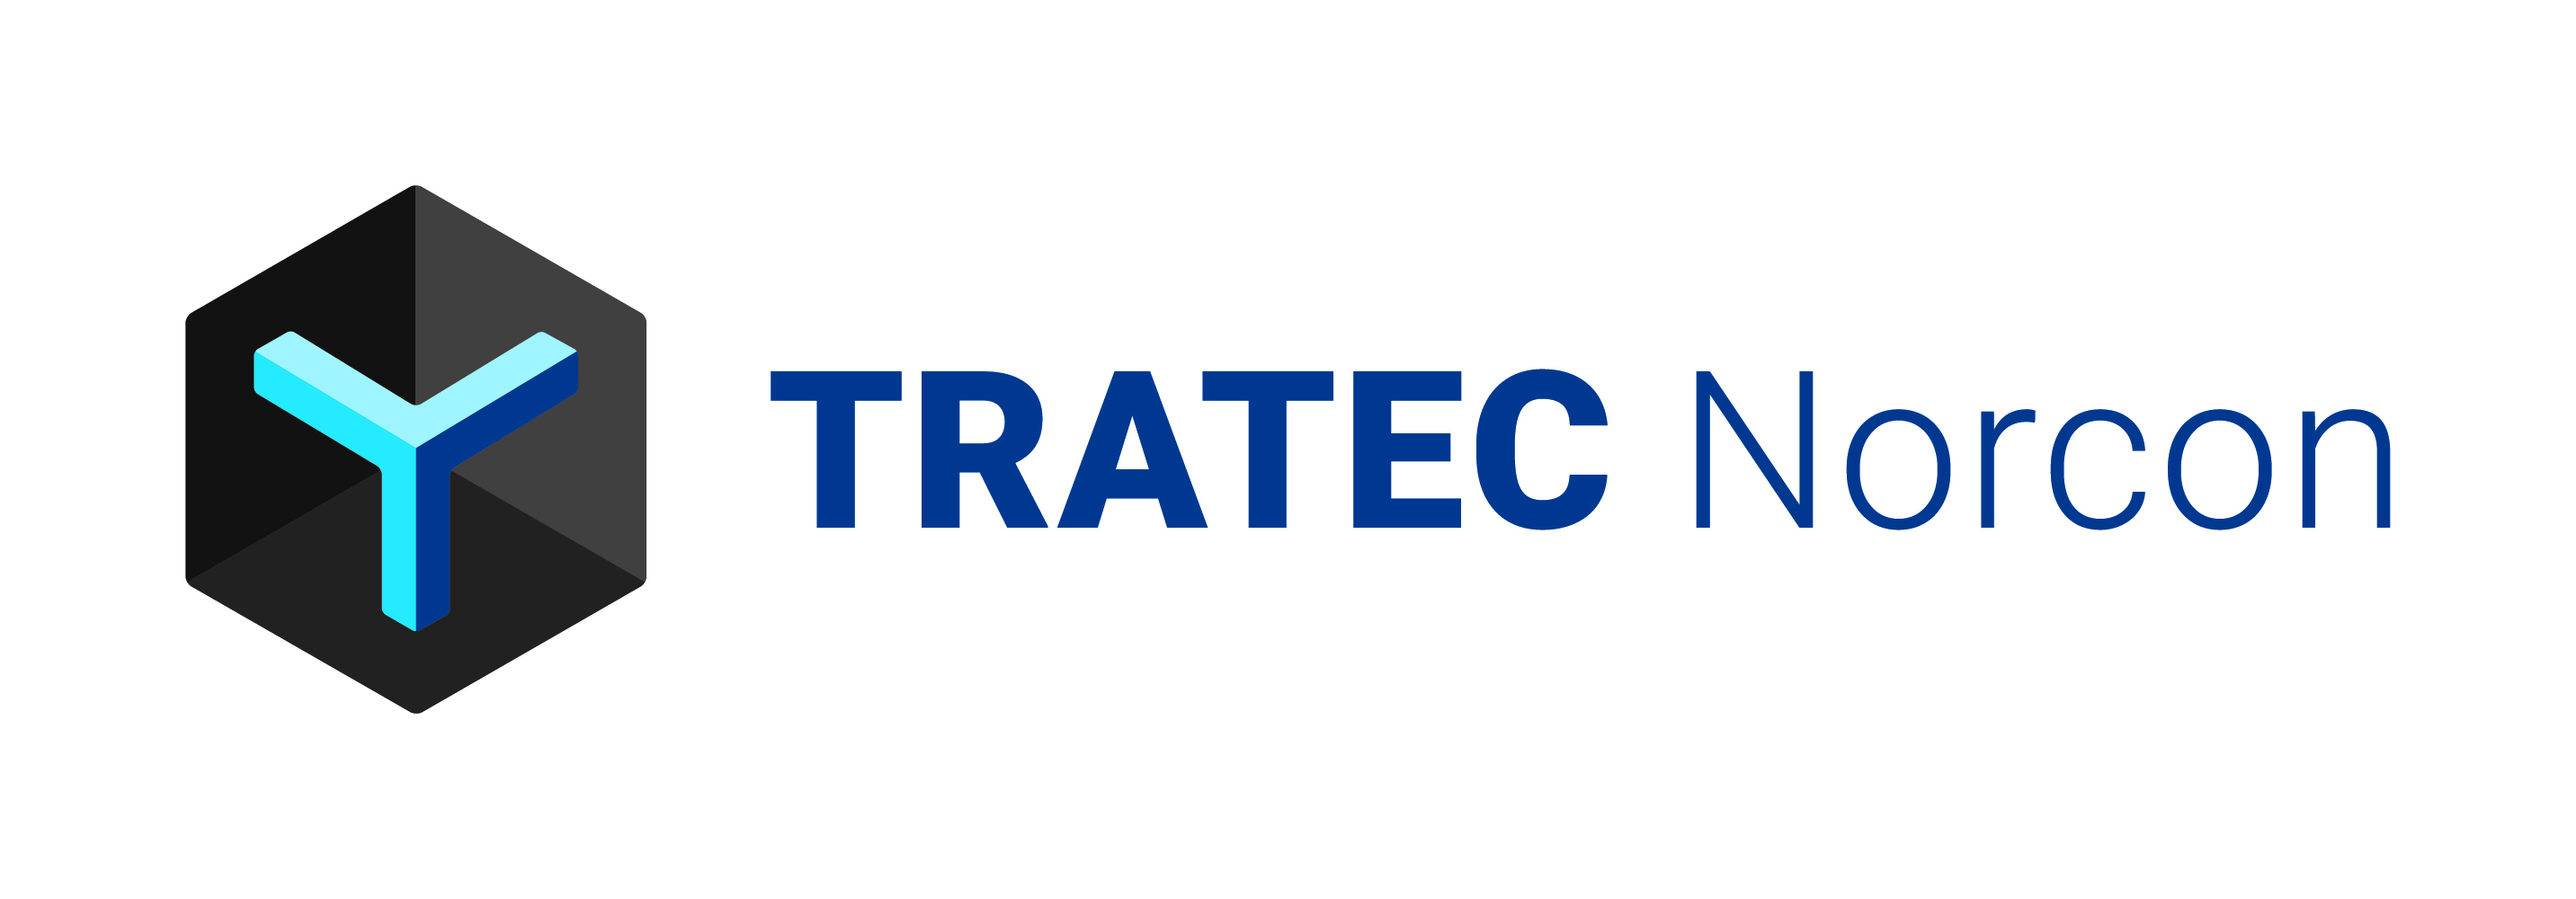 Tratec Norcon AS - Logo